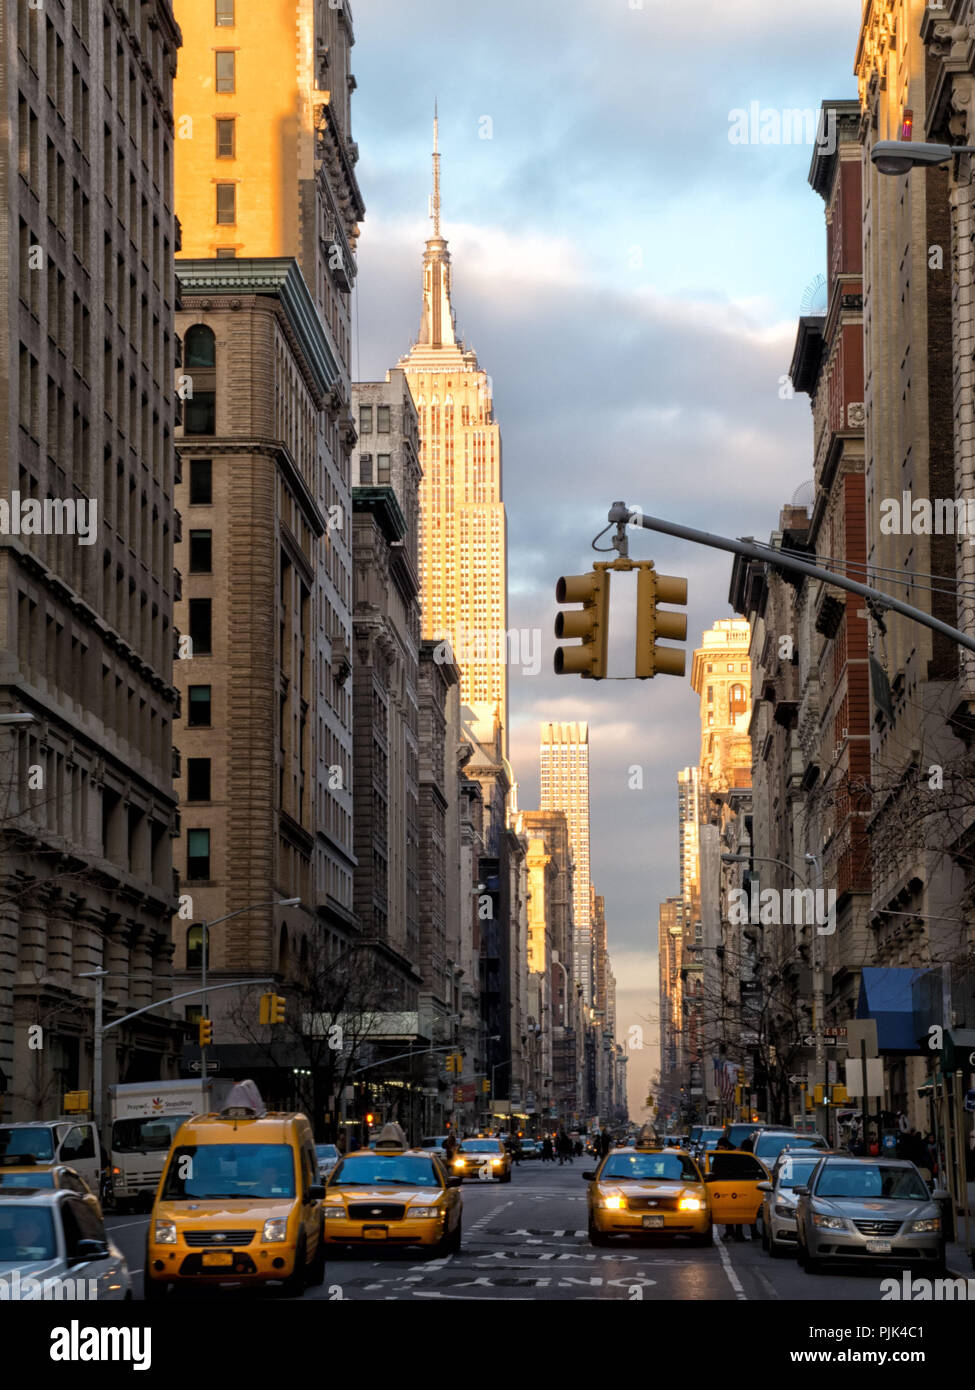 Scena di strada con taxi gialli e Empire State Building a Manhattan, New York City, Stati Uniti d'America Foto Stock